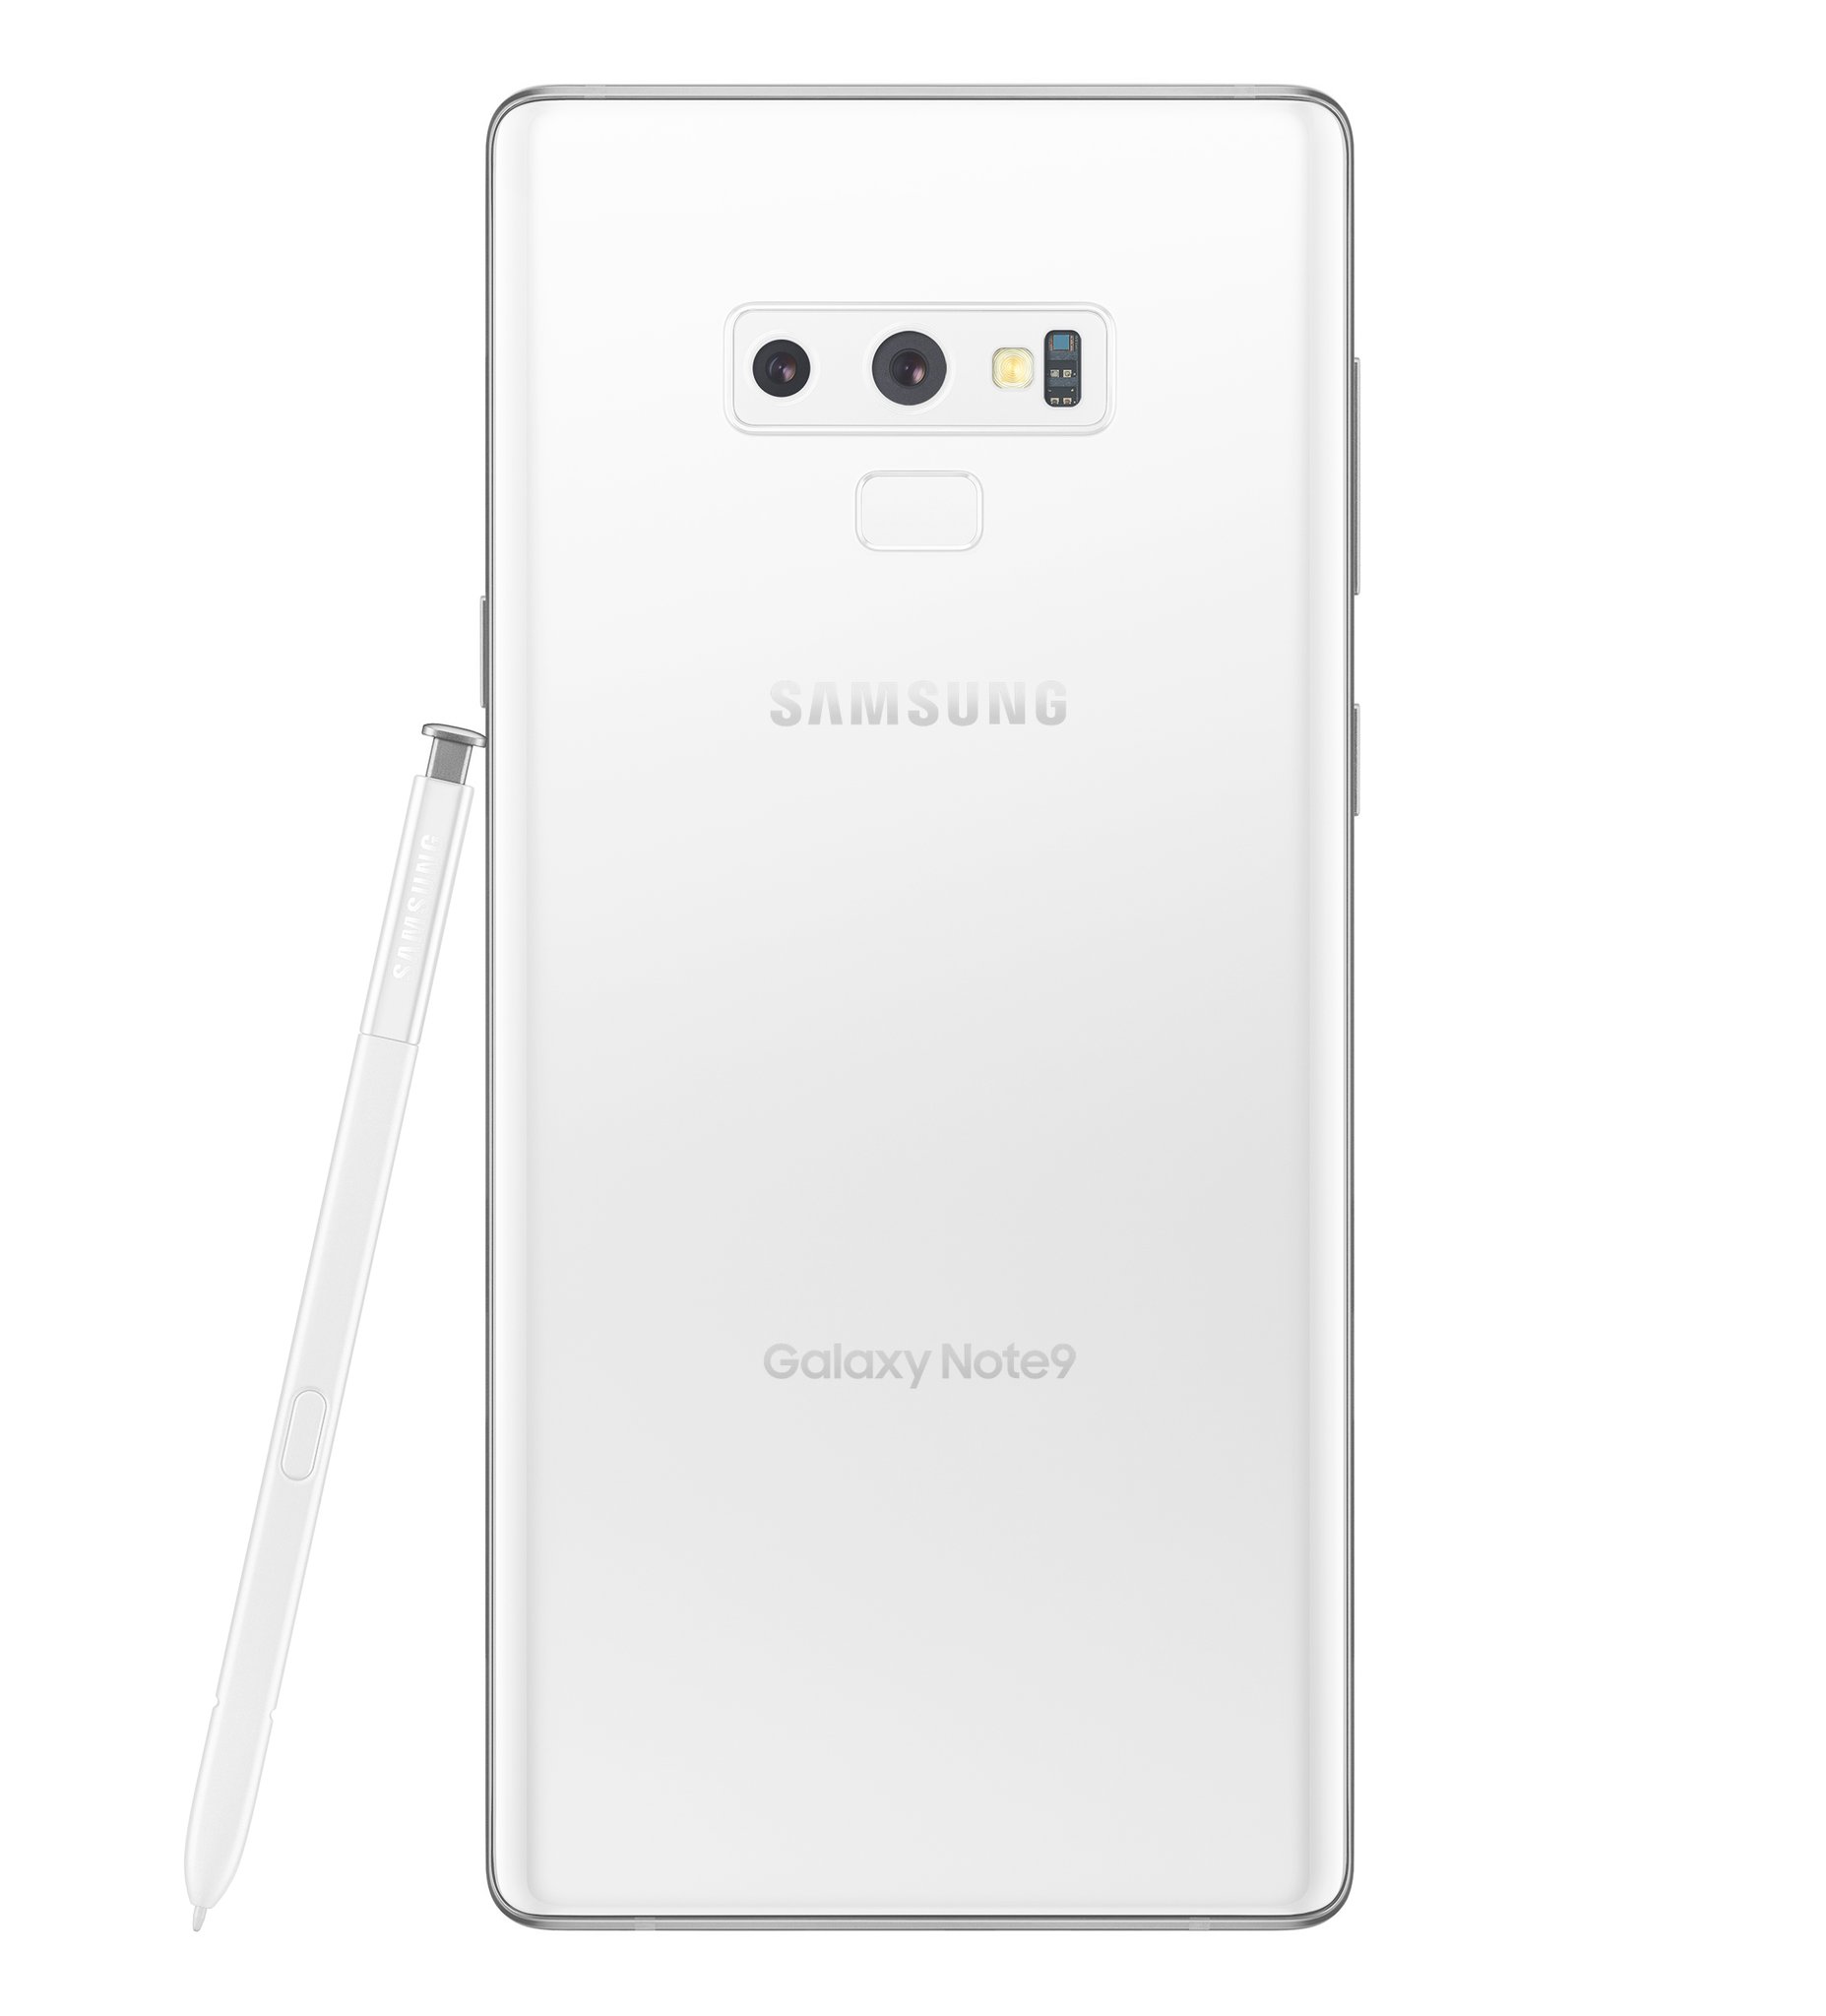 Samsung GALAXY NOTE 9 white 1